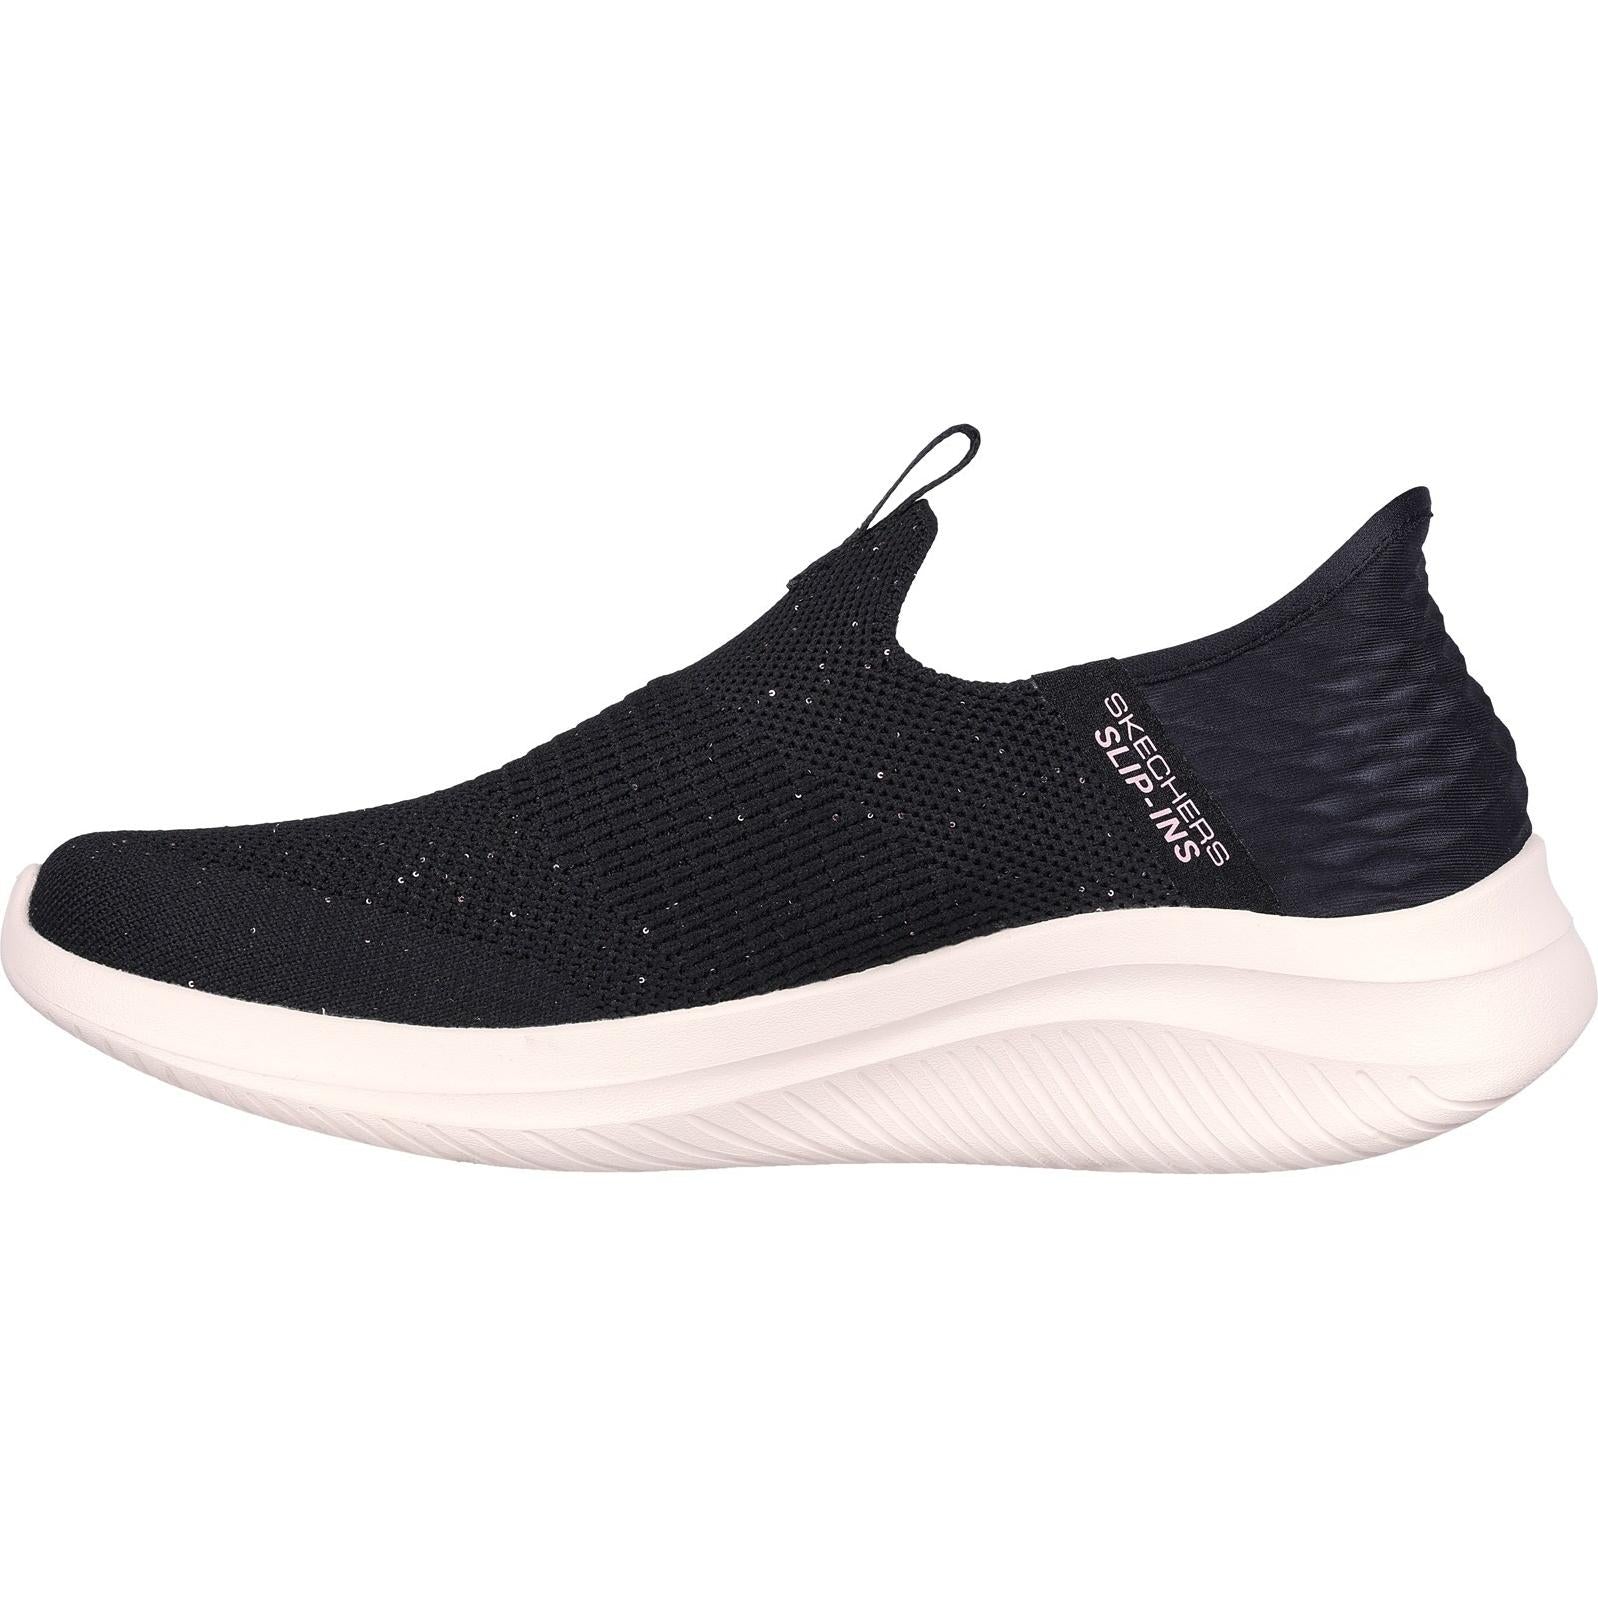 Skechers Ultra Flex 3.0 Shoe